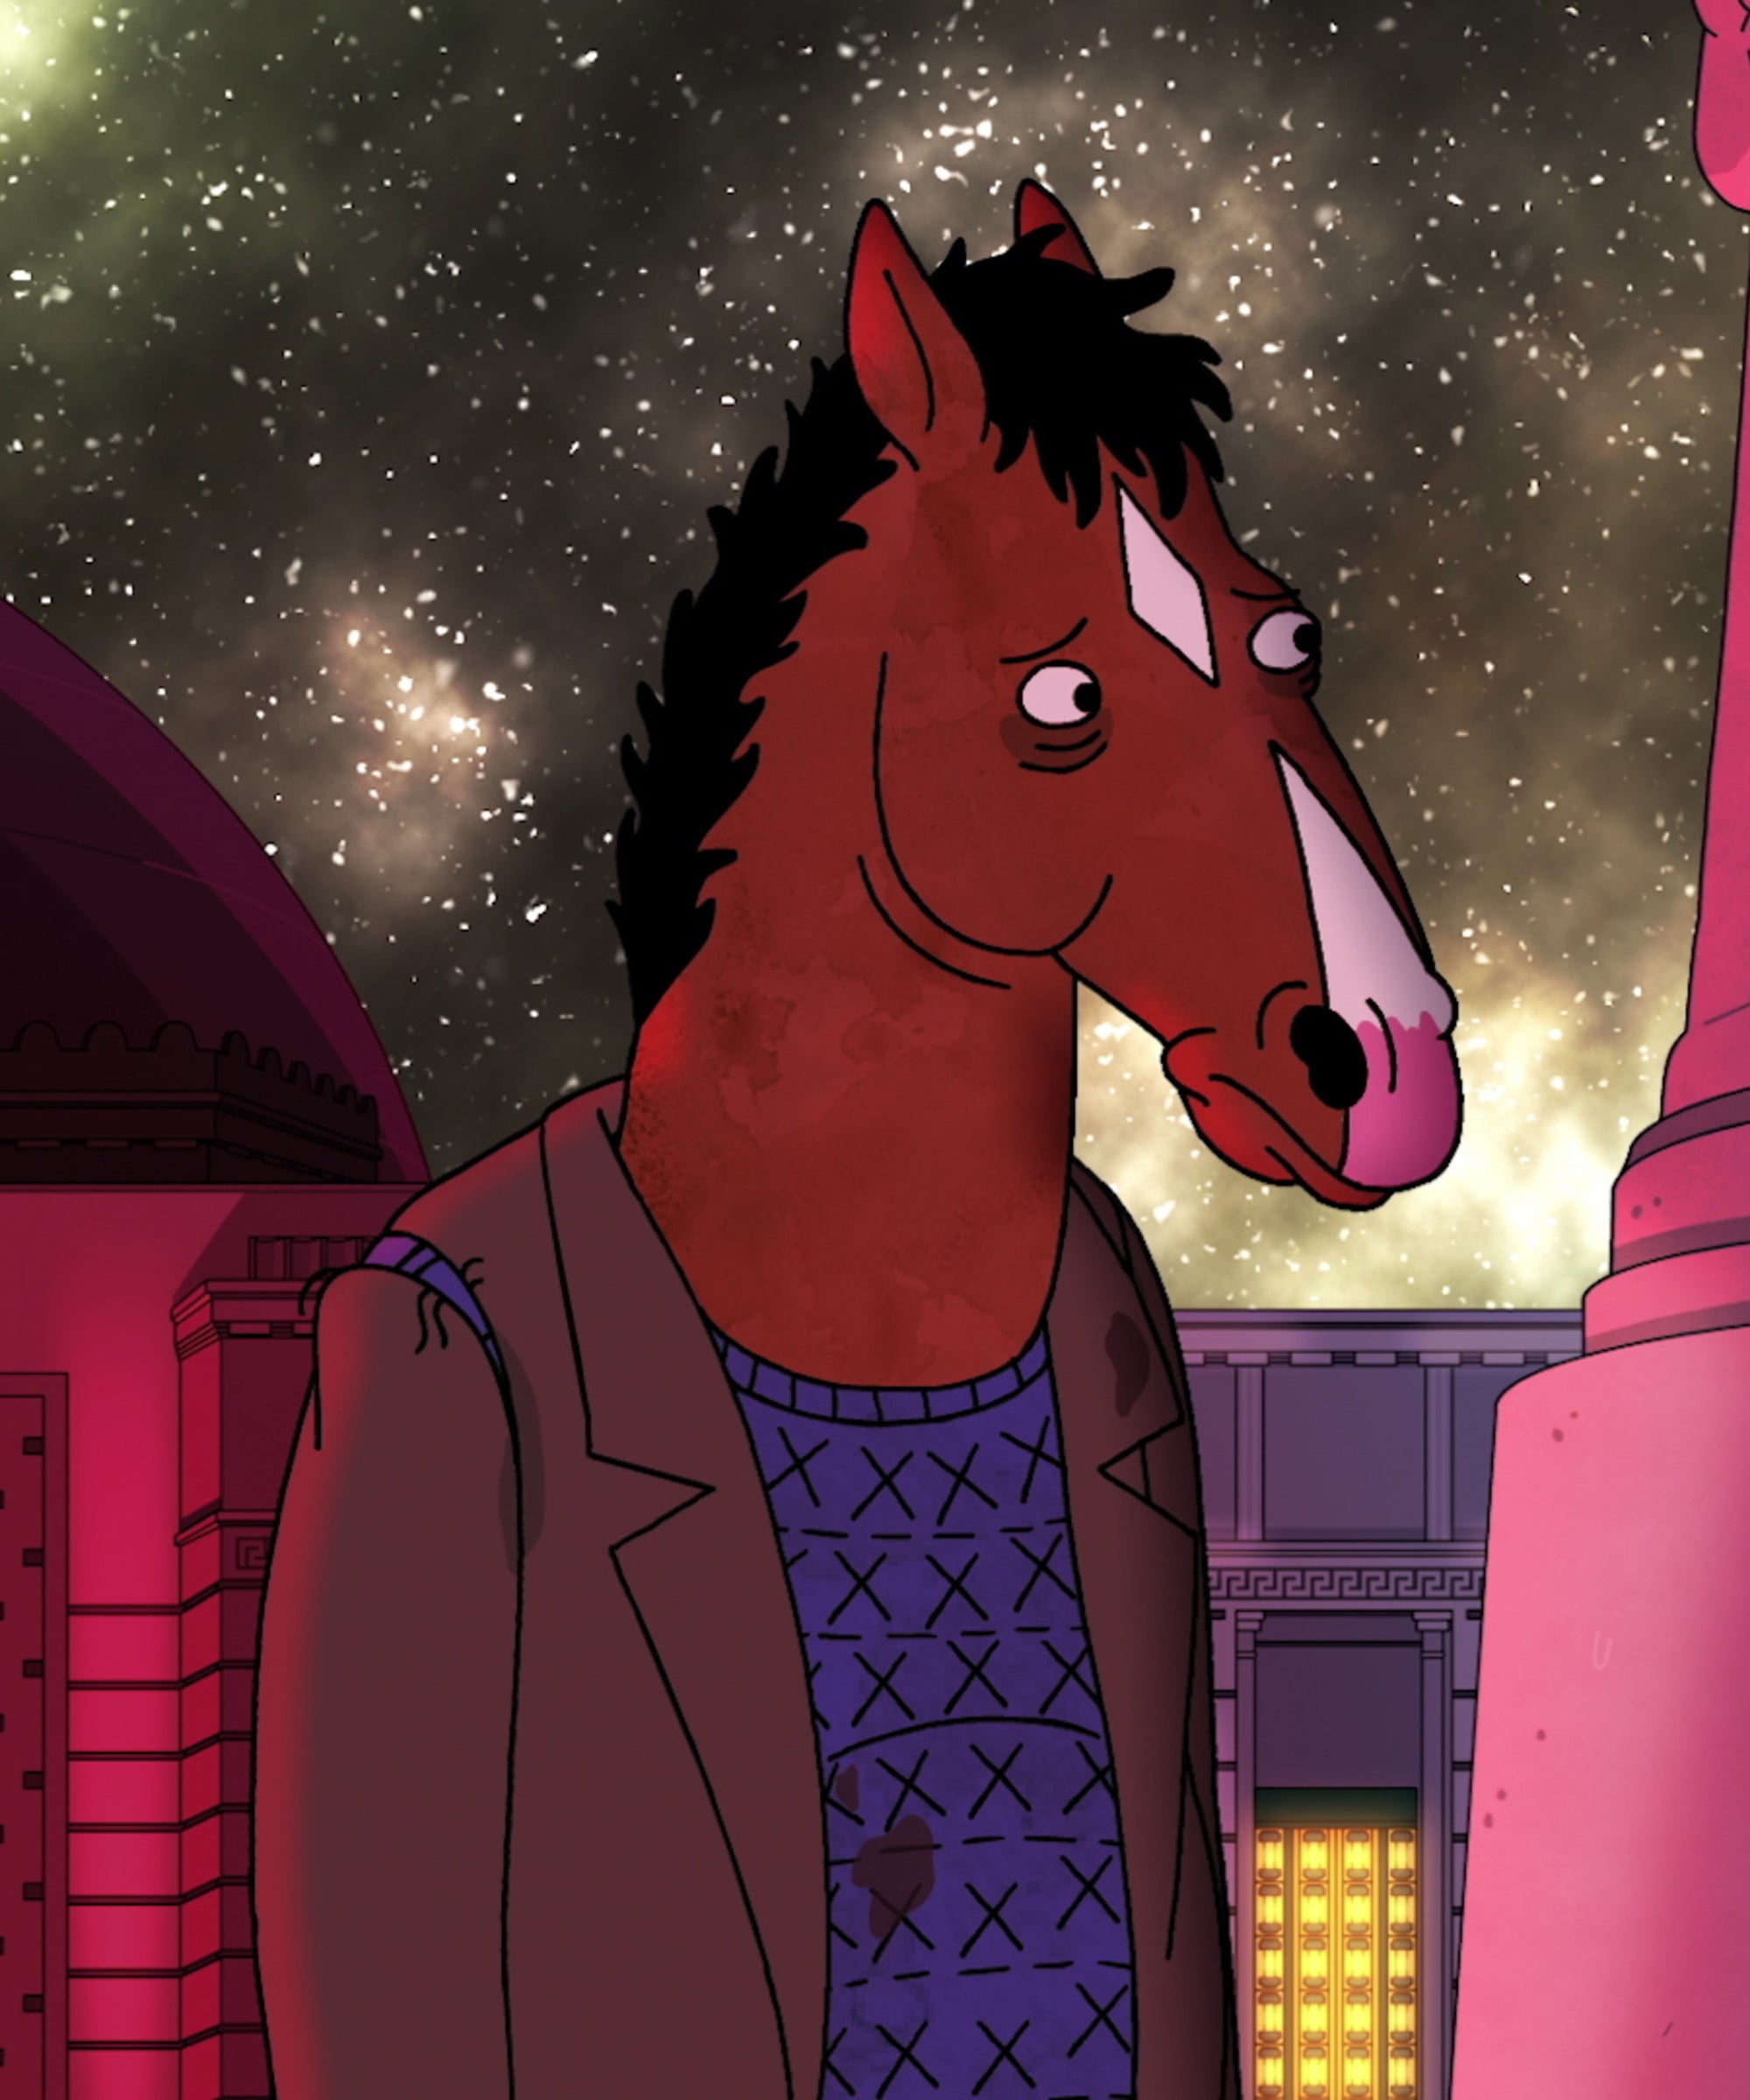 BoJack Horseman' Season 6, Episode 4 Recap: 'Surprise!